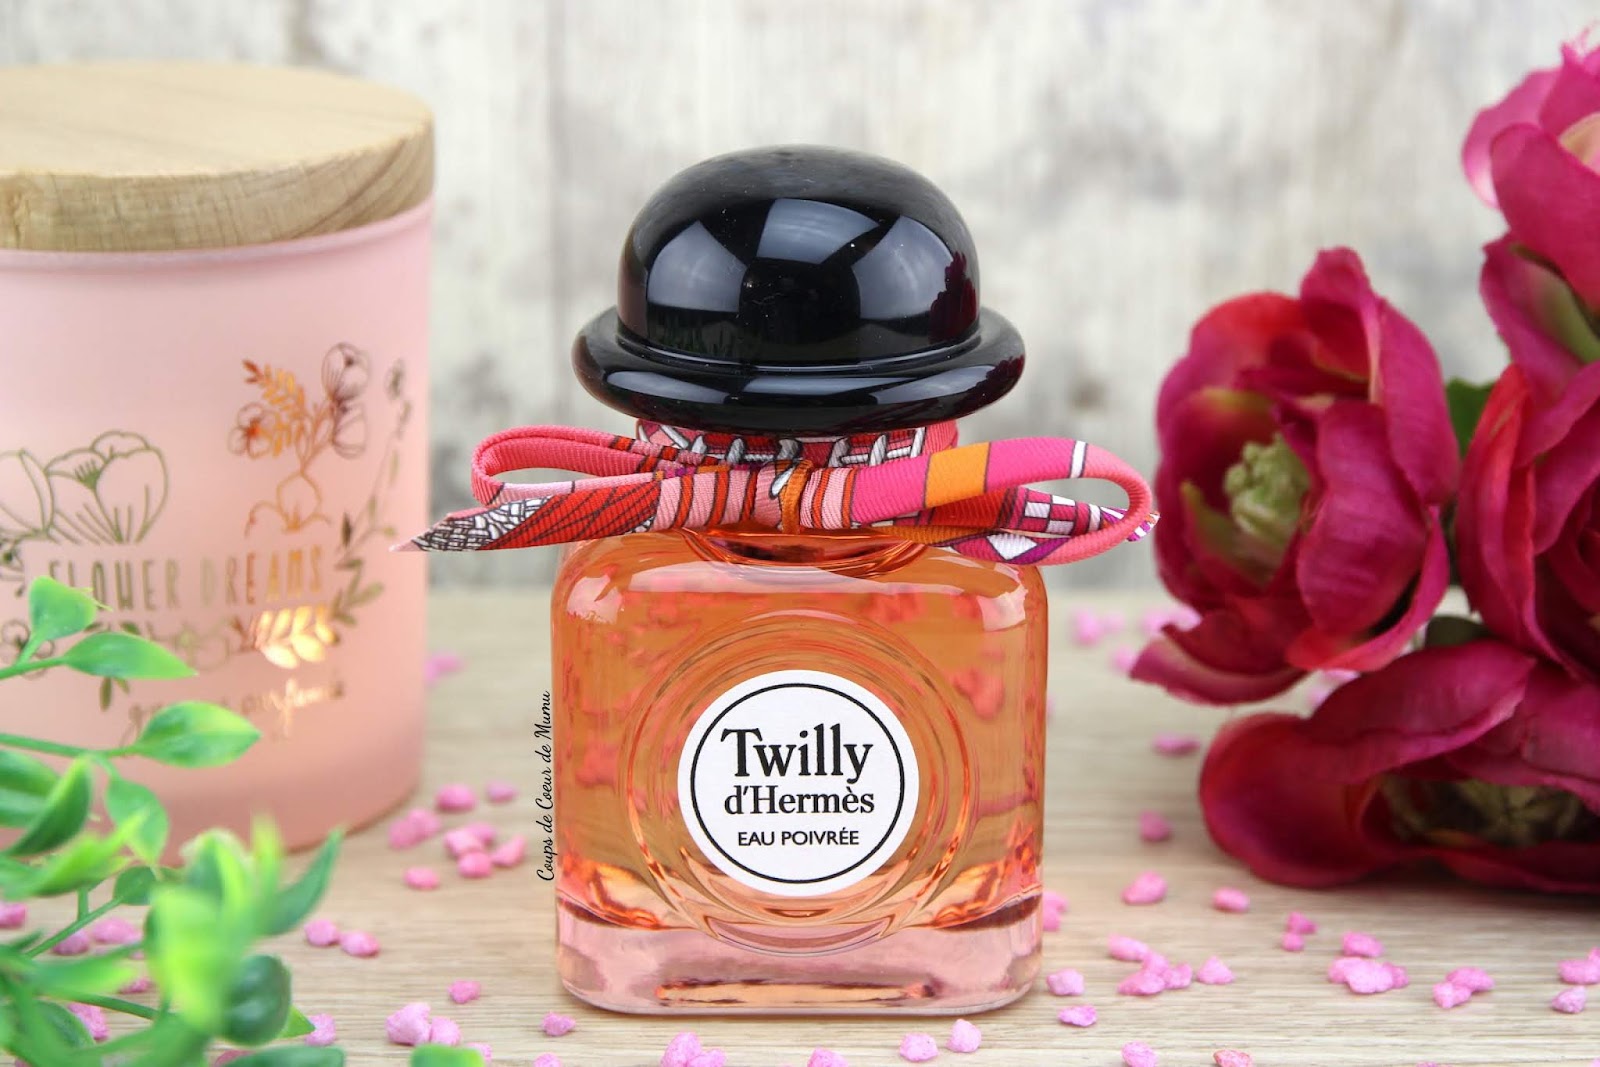 Le nouveau Parfum Twilly d'Hermès Eau Poivrée - Coups de Coeur de Mumu